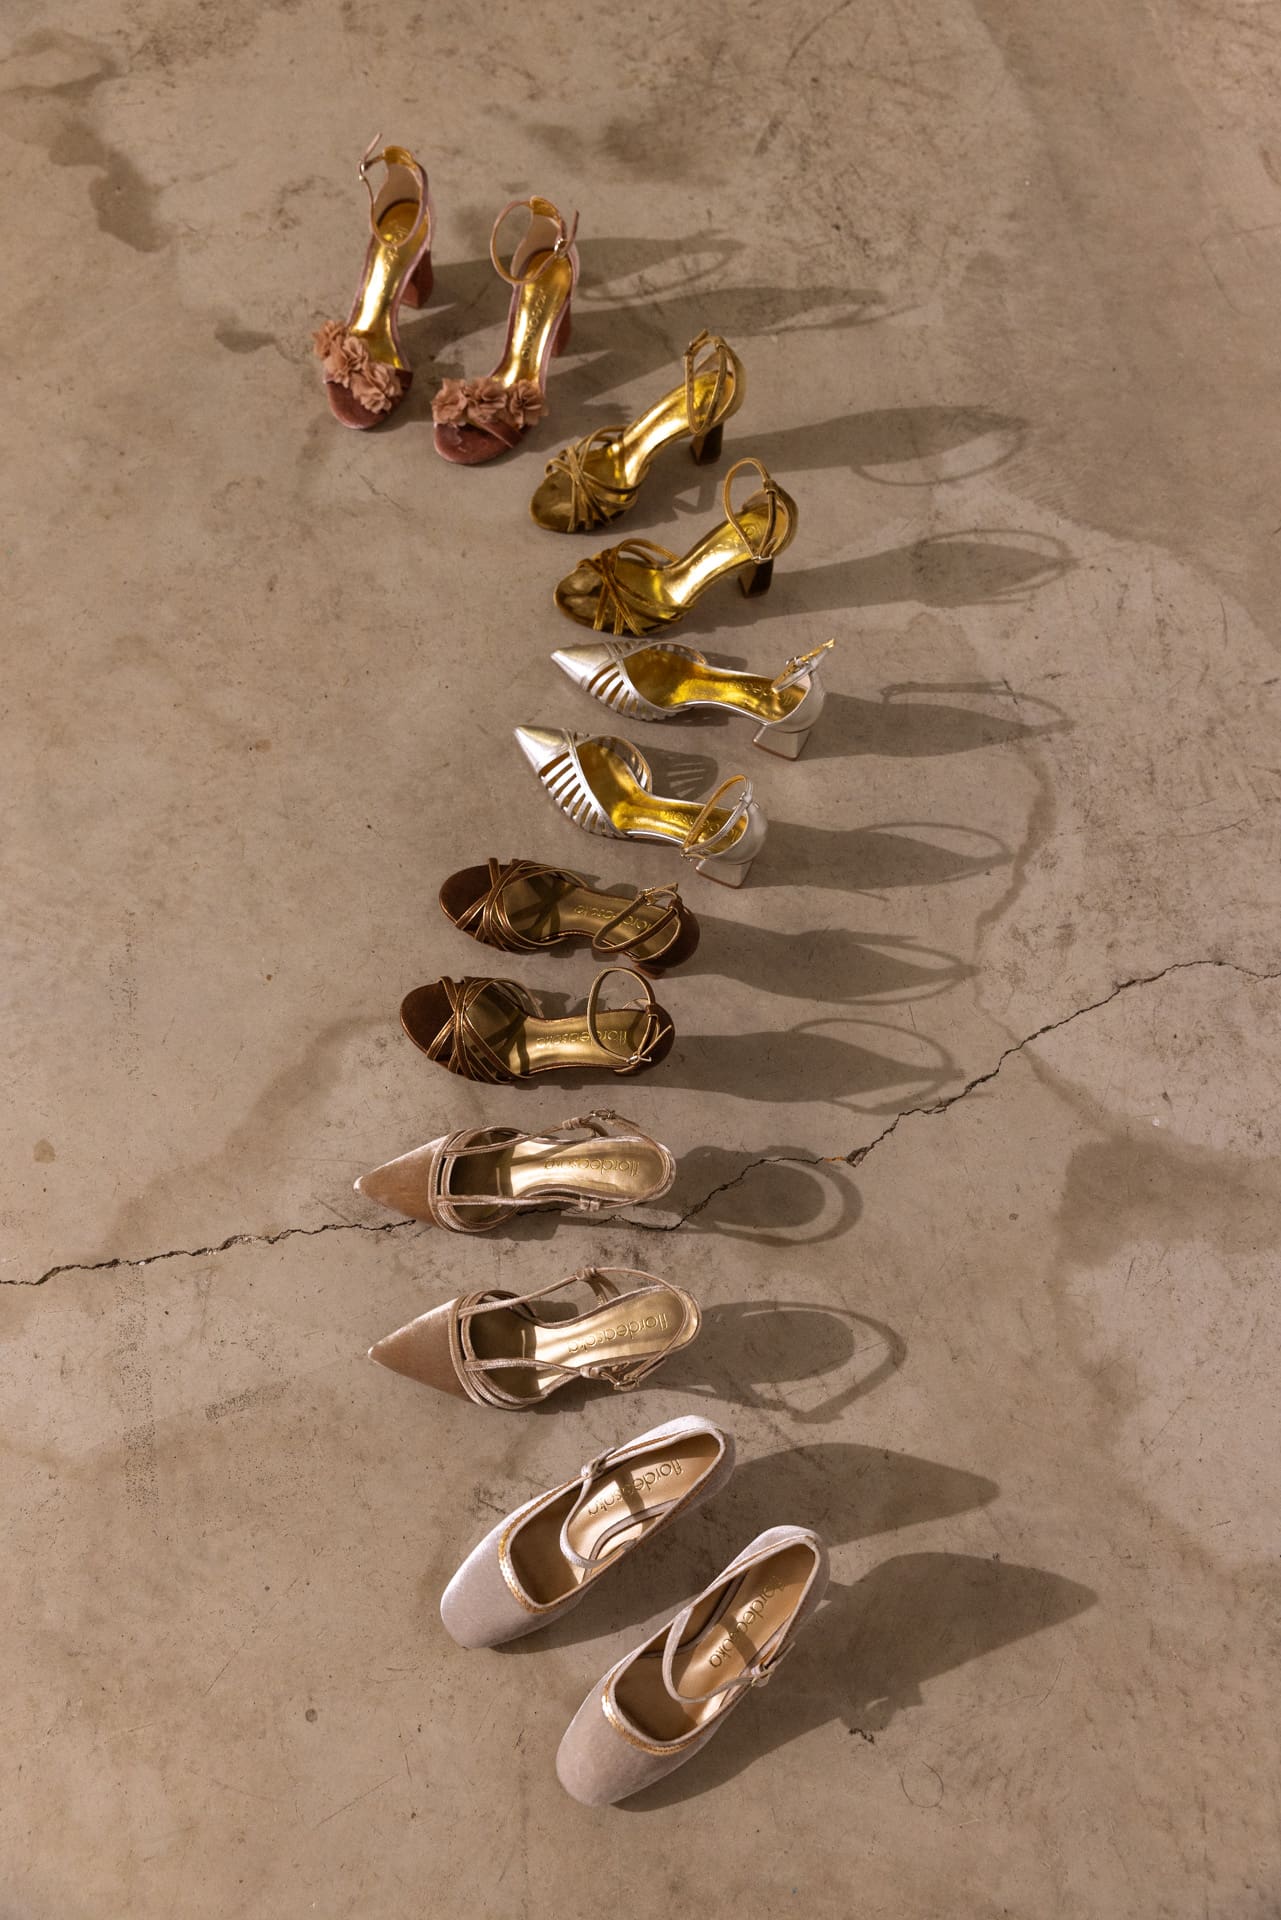 Variedad de zapatos de novia de Flordeasoka dispuestos artísticamente en forma de "S", mostrando la diversidad de estilos y tendencias en calzado nupcial.